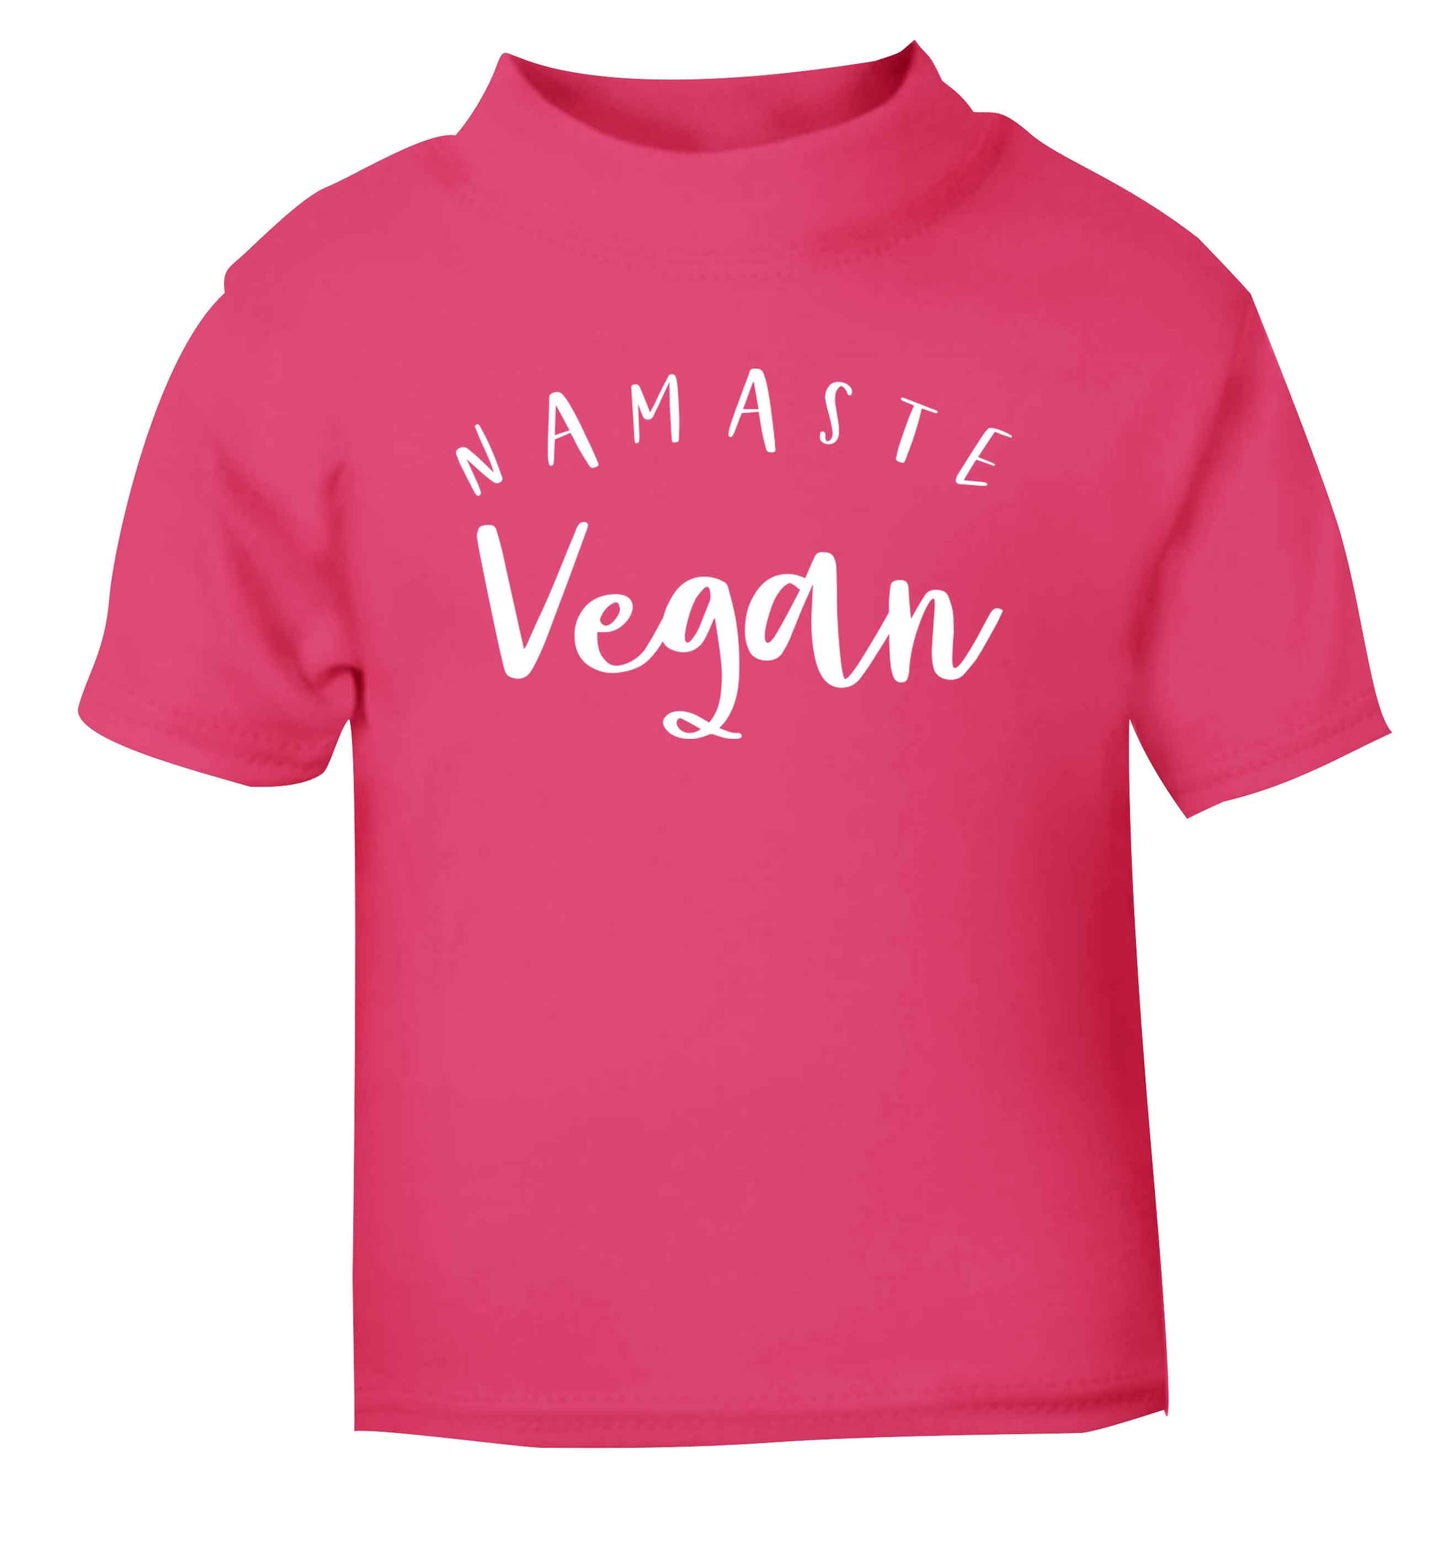 Namaste vegan pink Baby Toddler Tshirt 2 Years